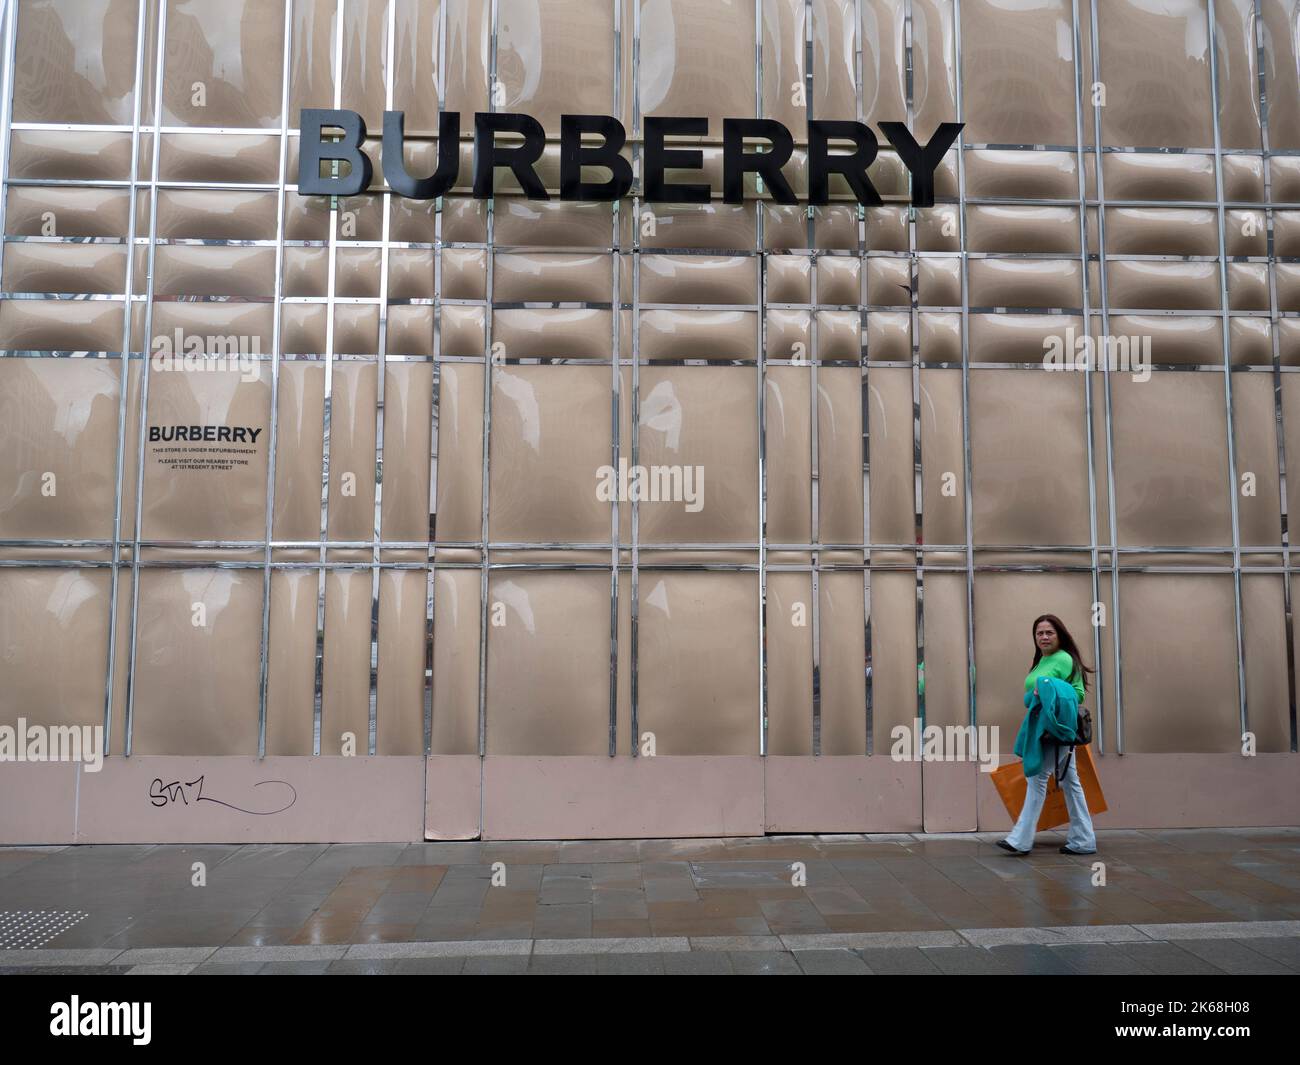 Mayfair, Londra, Regno Unito, accaparramento temporaneo di fronte al negozio Burberry durante la ristrutturazione, con gli acquirenti che passano davanti Foto Stock